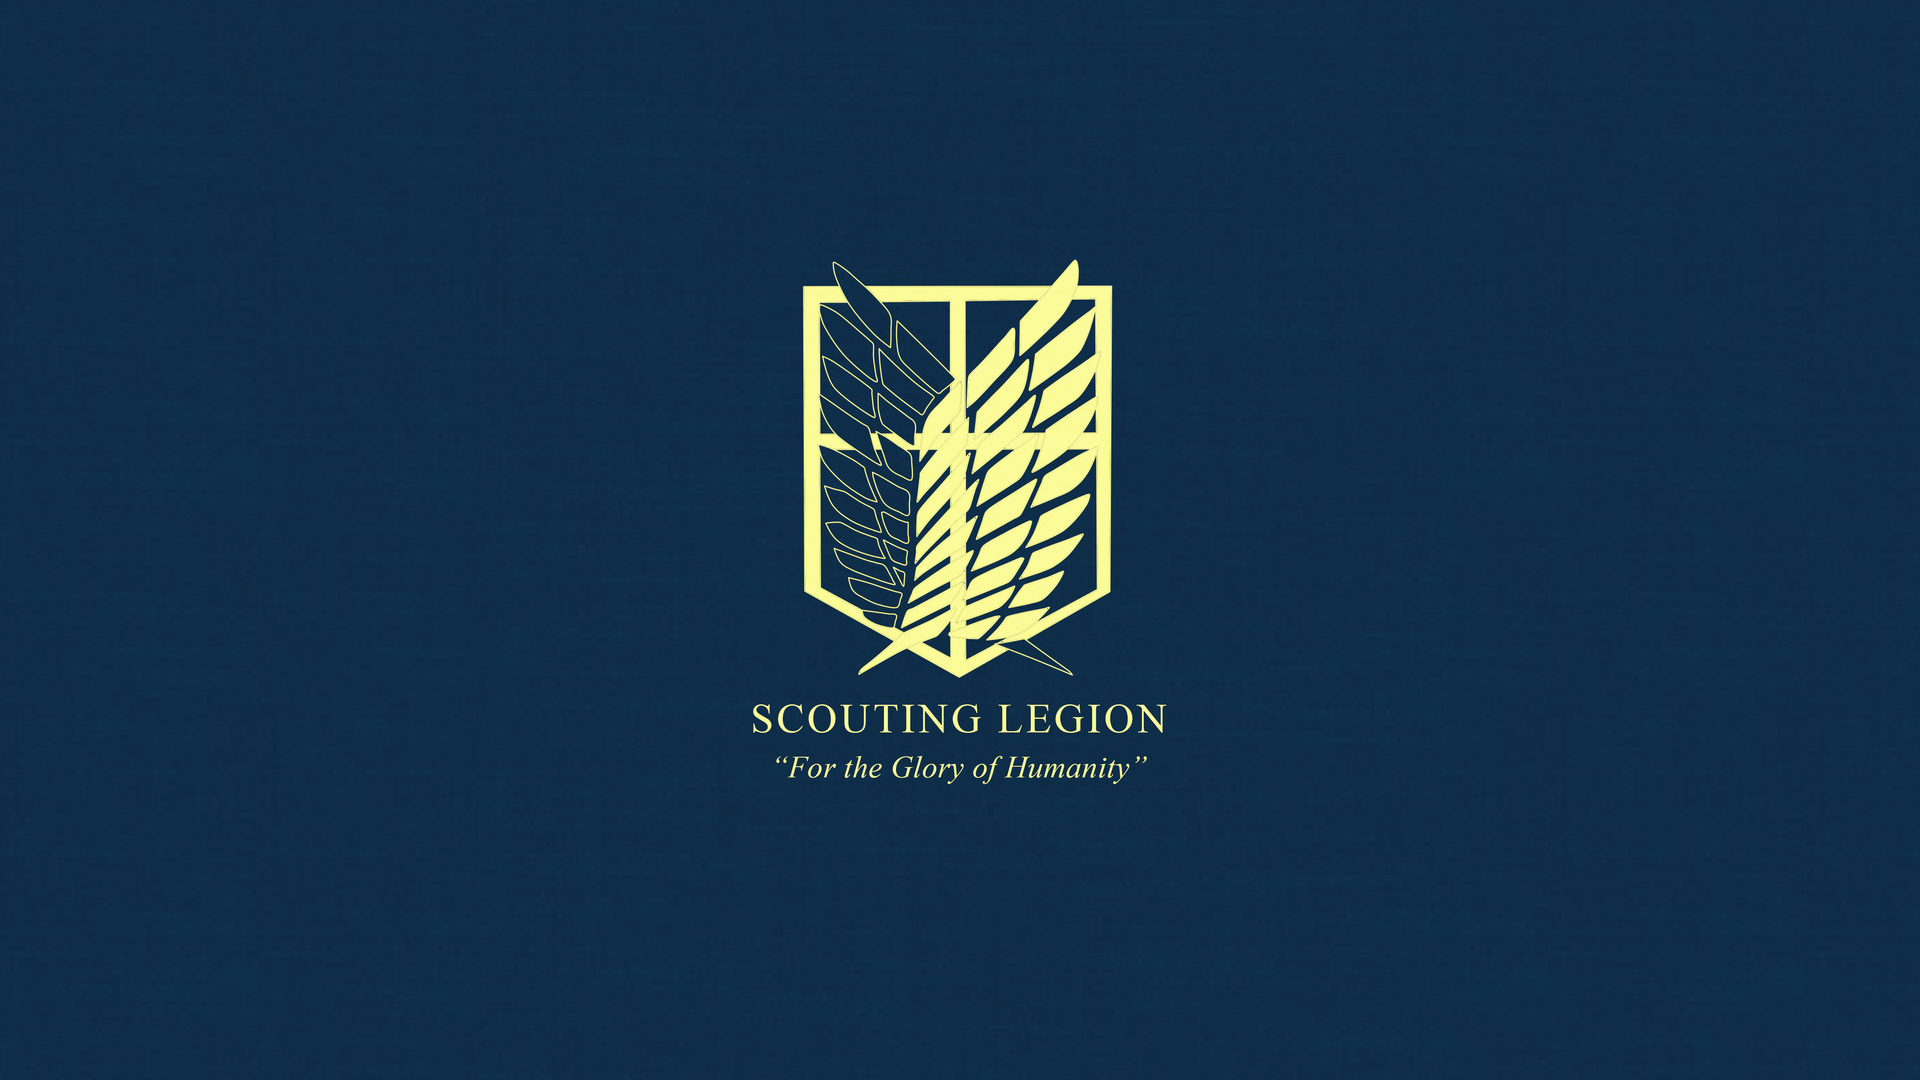 on titan scouting legion wallpaper by imxset21 fan art wallpaper